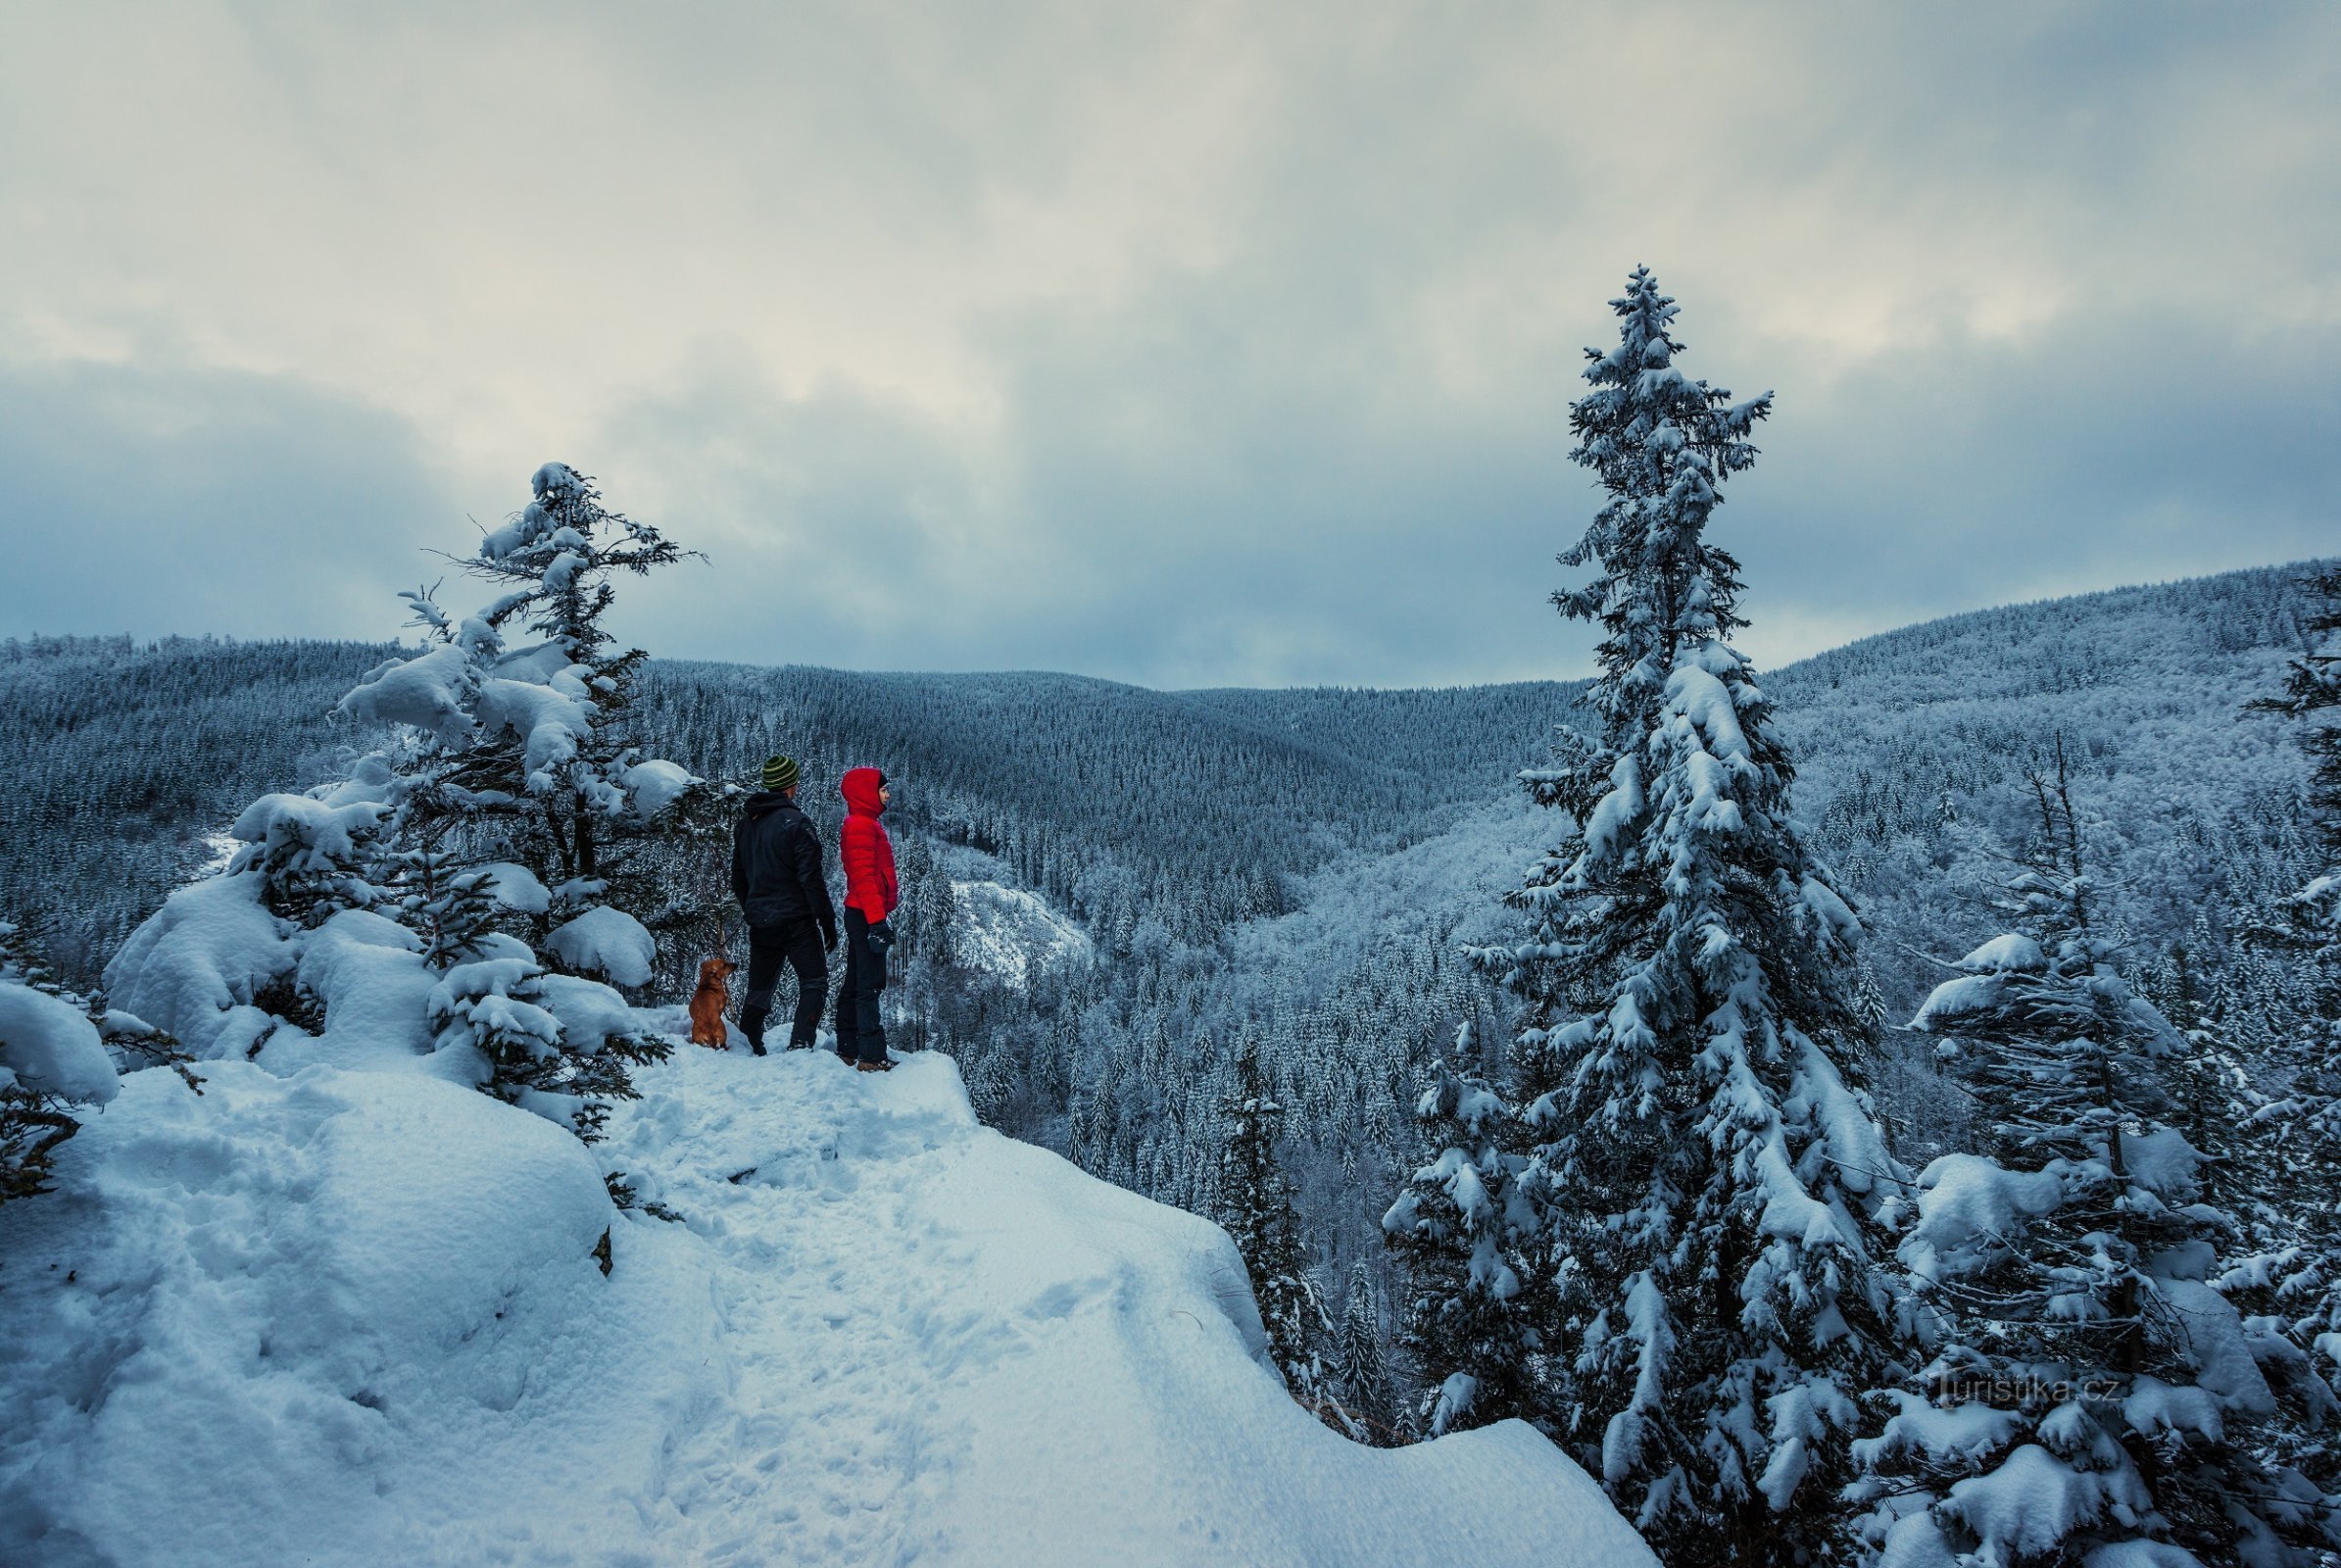 Không chỉ ván trượt hay ván trượt xuyên quốc gia - đi bộ đường dài leo núi mùa đông có phép thuật riêng!